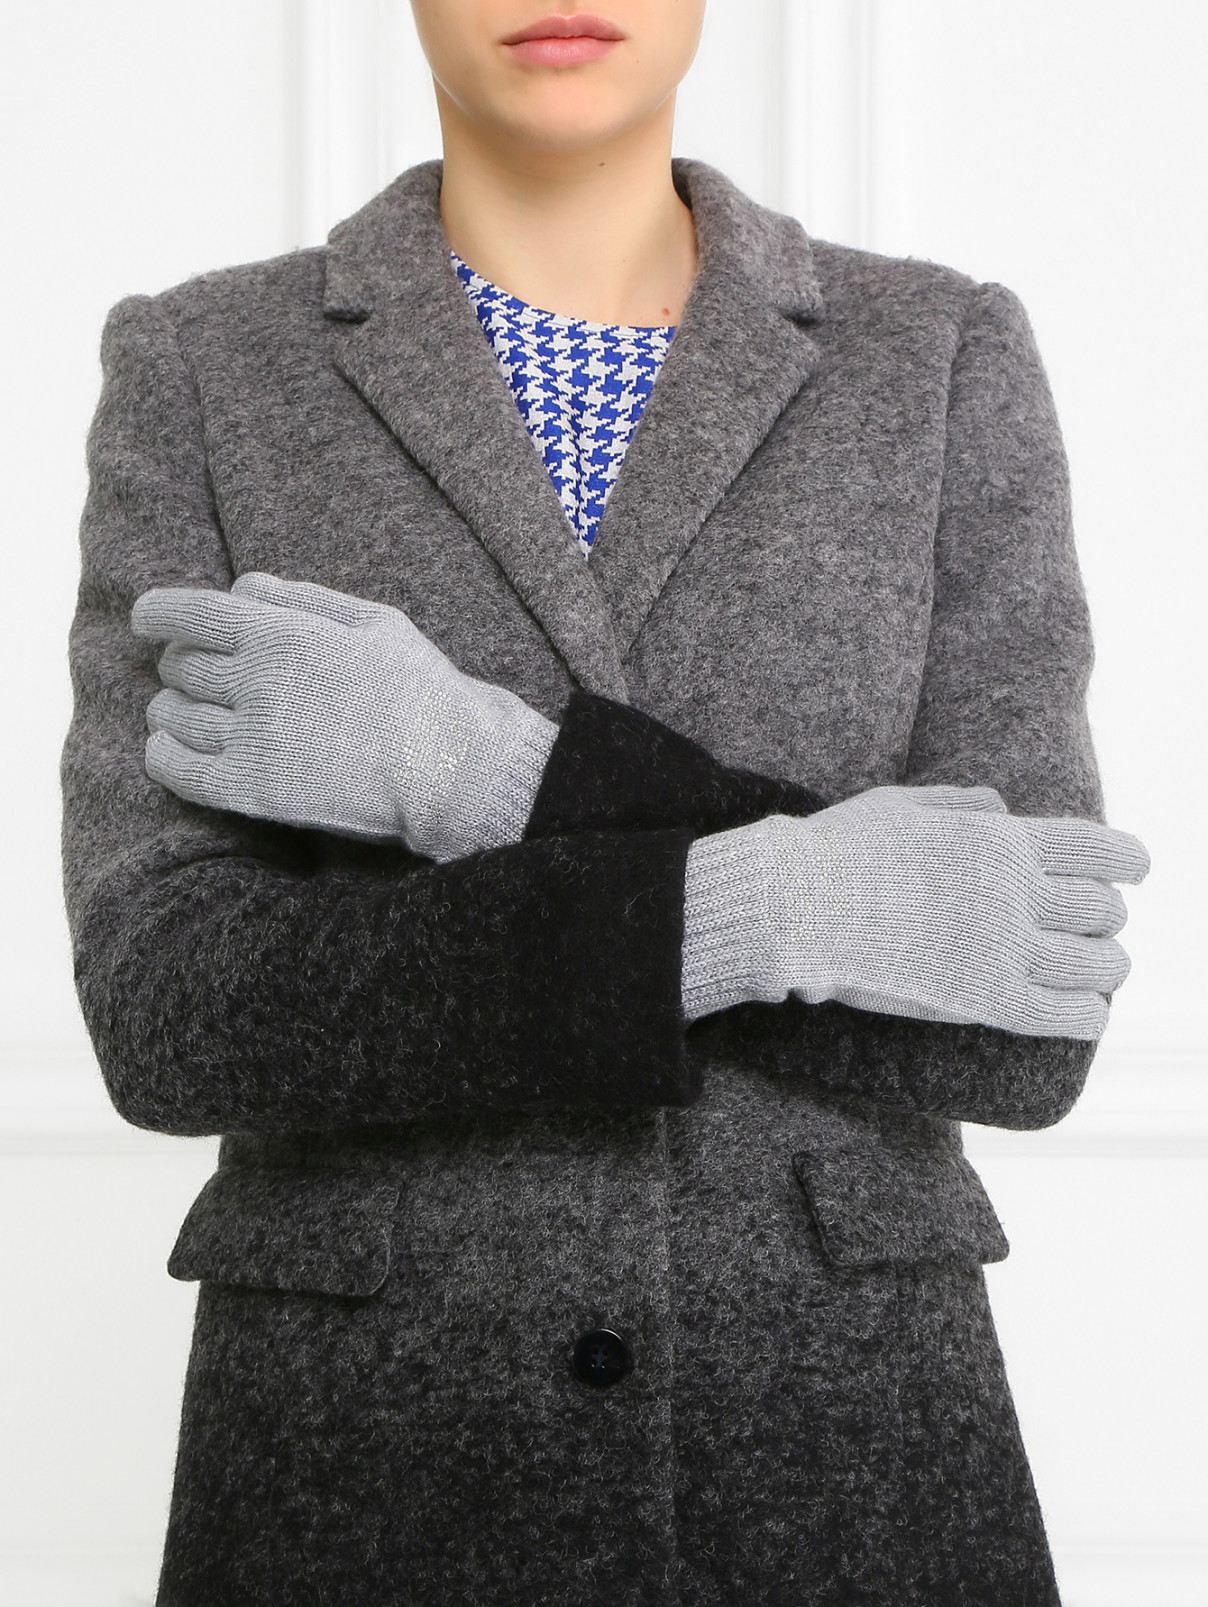 Перчатки из трикотажа с декором из кристаллов Moschino Couture  –  Модель Общий вид  – Цвет:  Серый